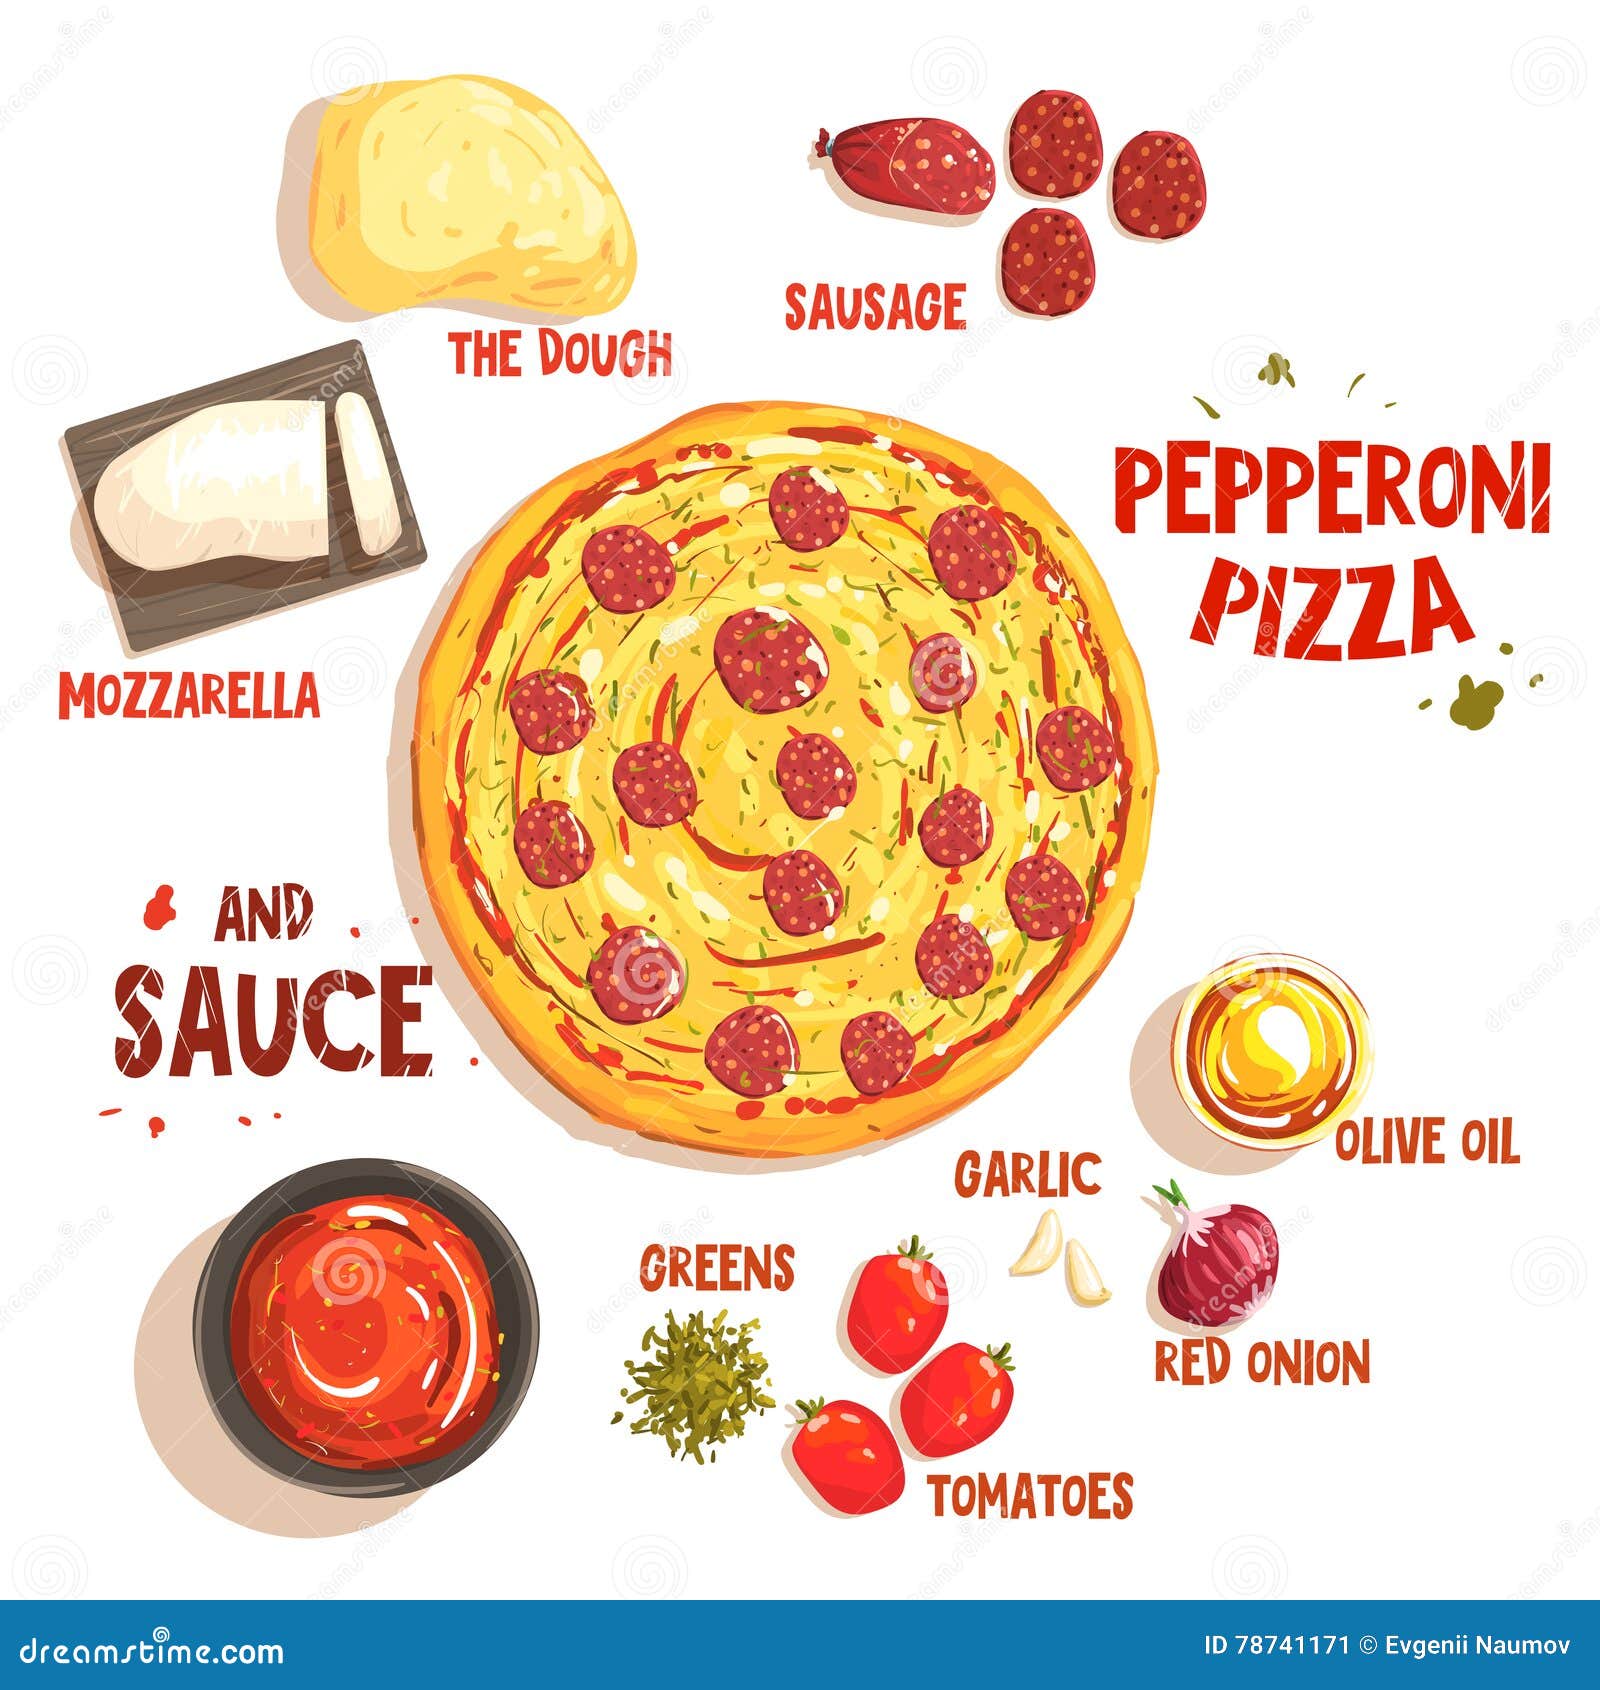 технологические карты для пиццы пепперони фото 88